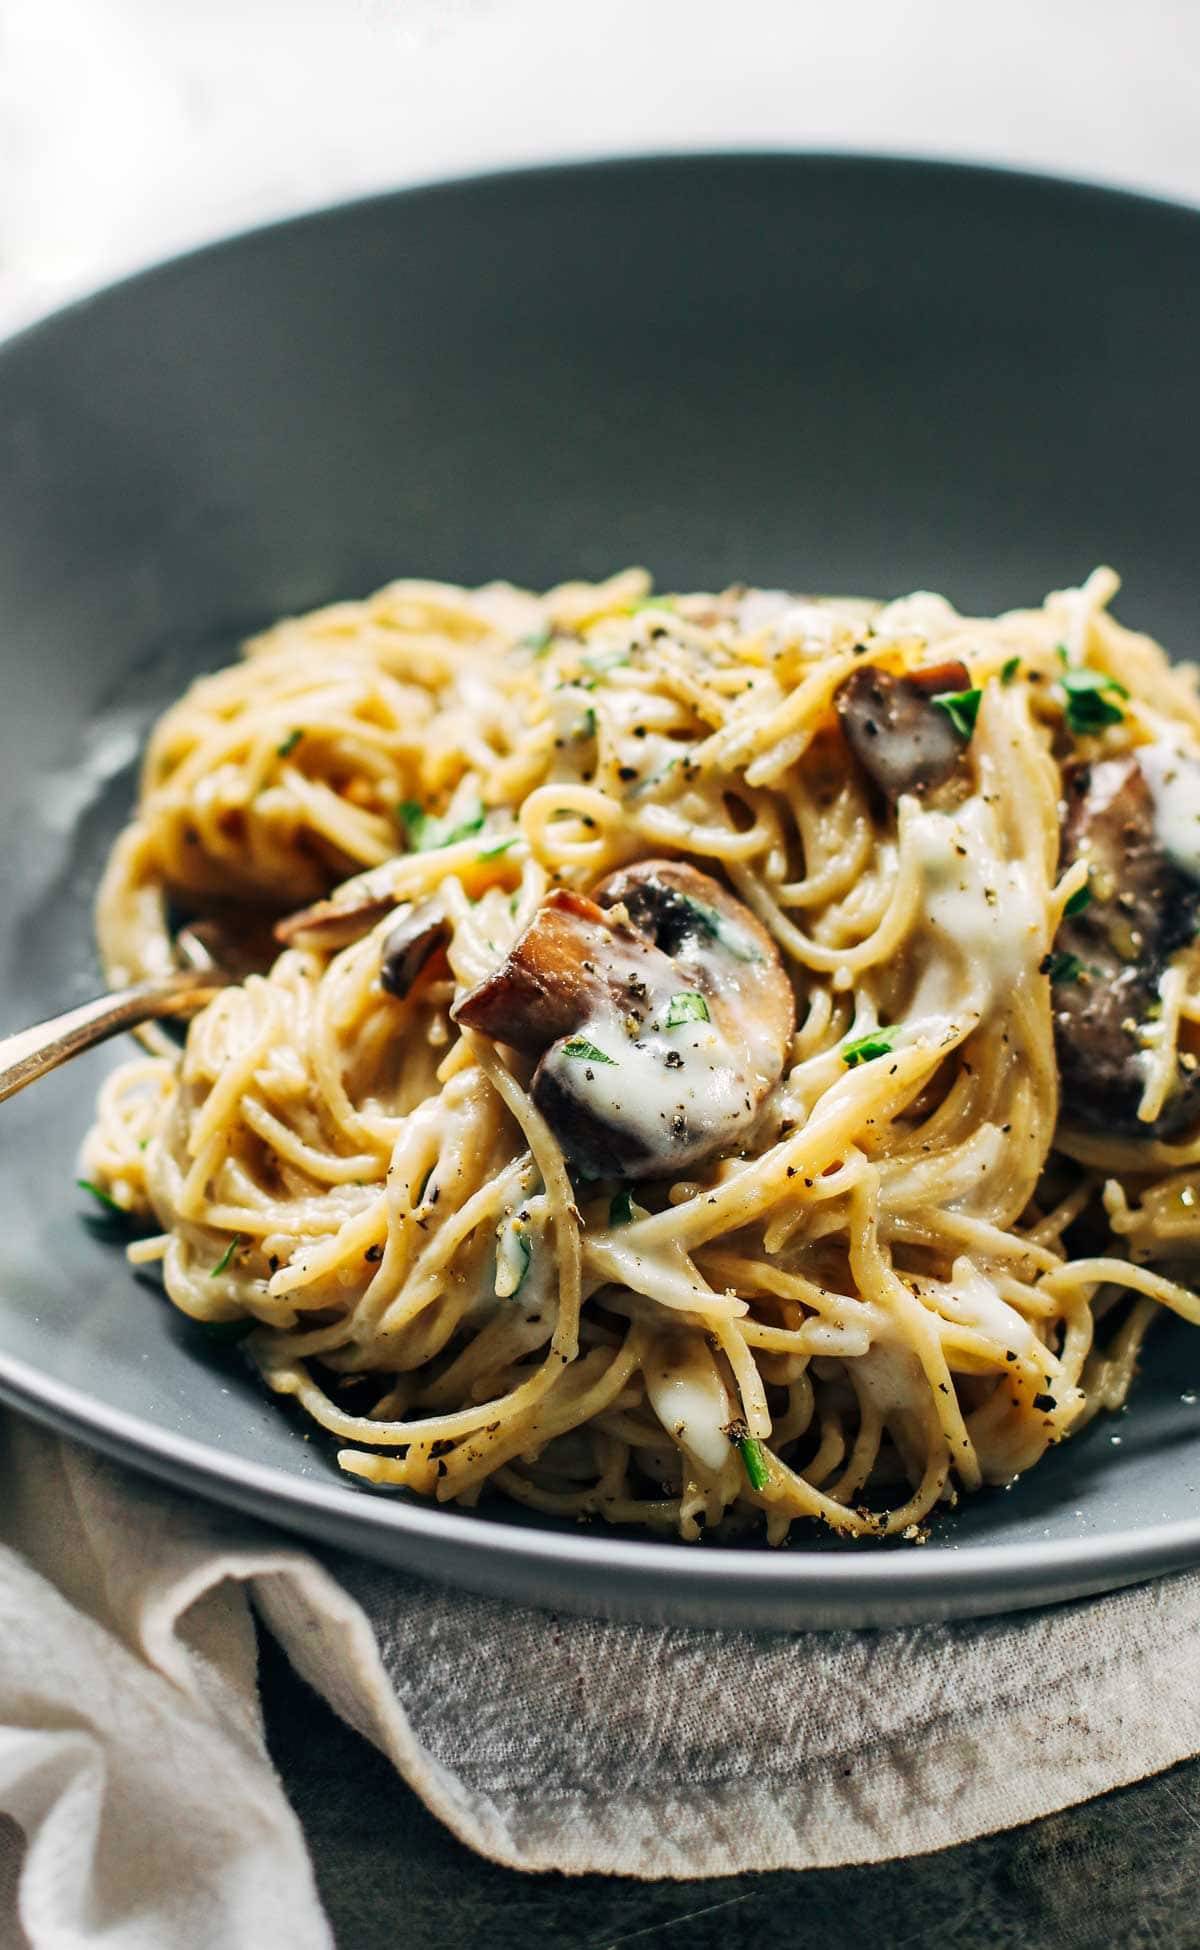 Creamy Garlic Herb Mushroom Spaghetti in a grey bowl.